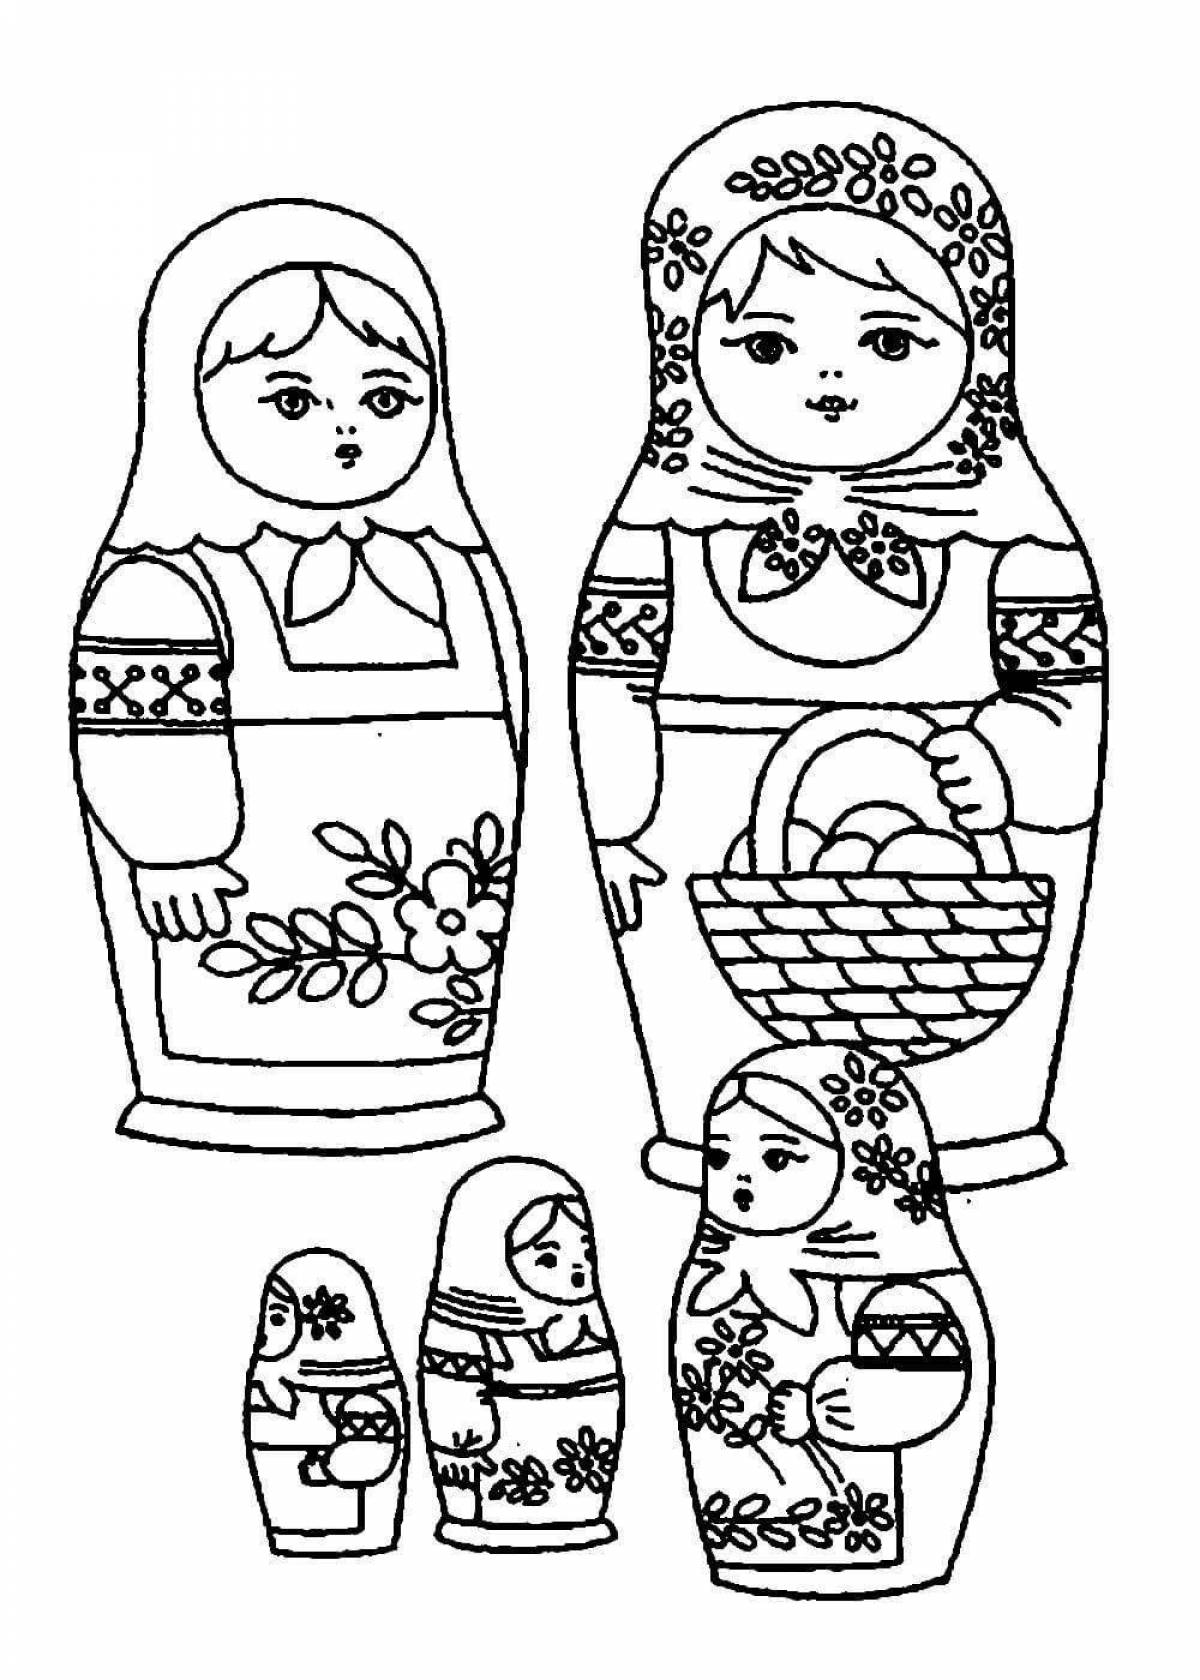 Colorful Chuvash matryoshka coloring book